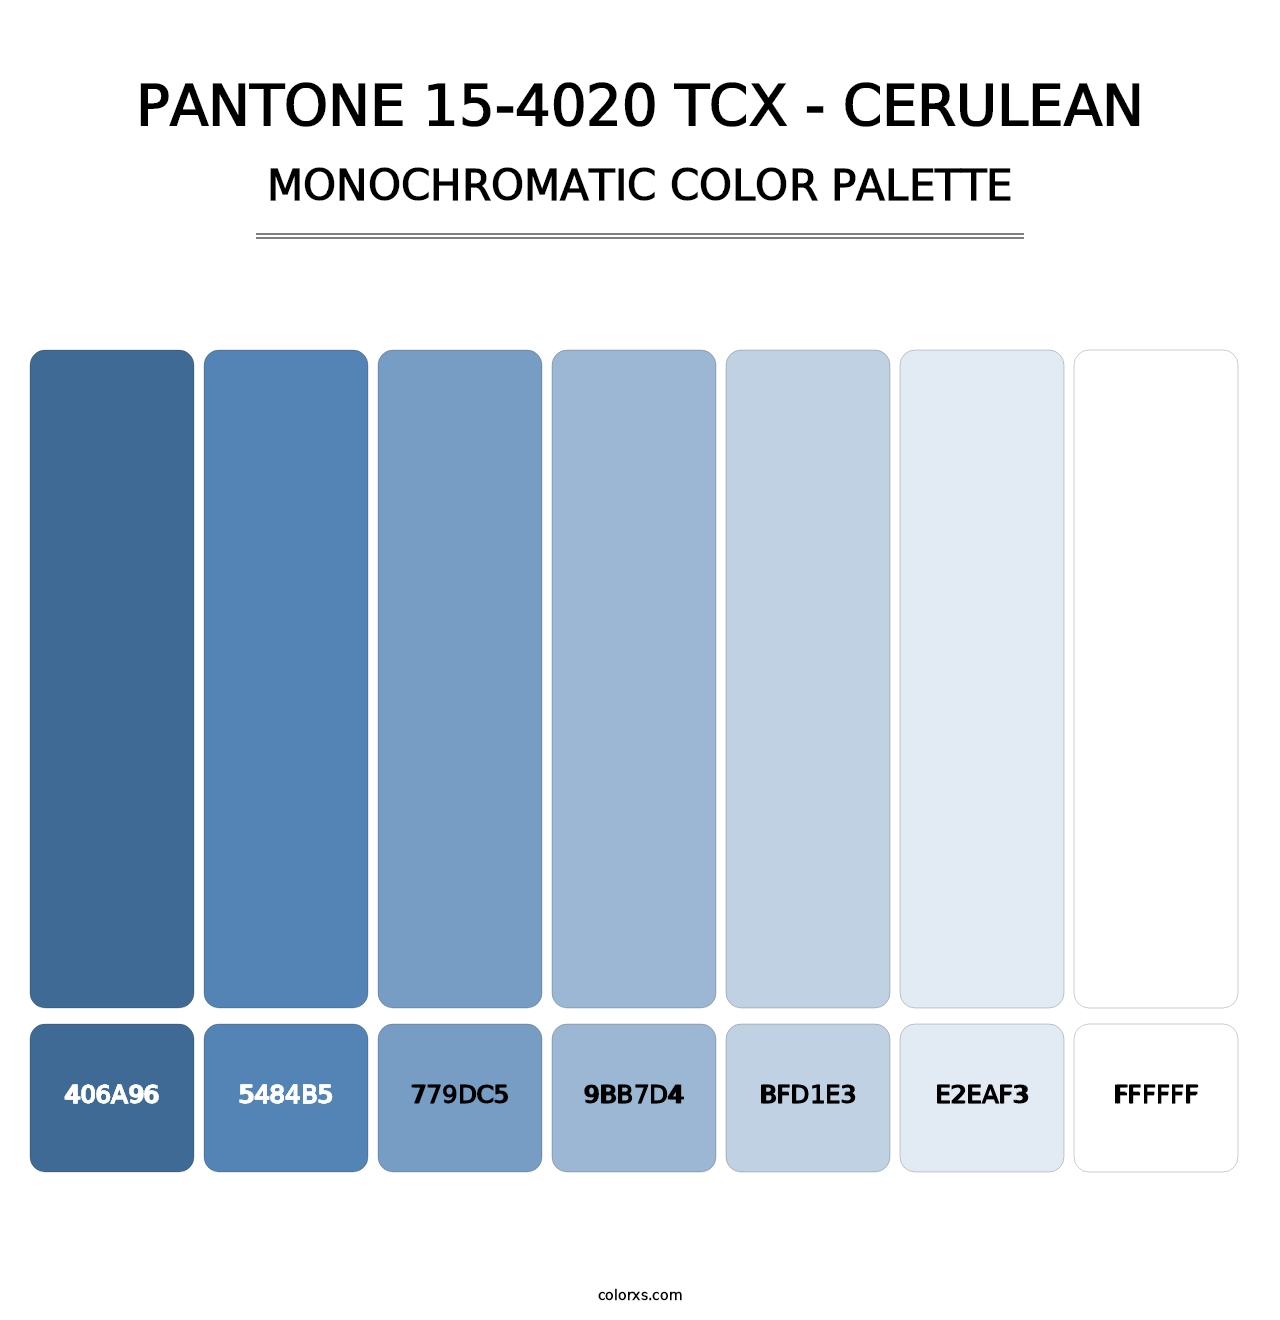 PANTONE 15-4020 TCX - Cerulean - Monochromatic Color Palette